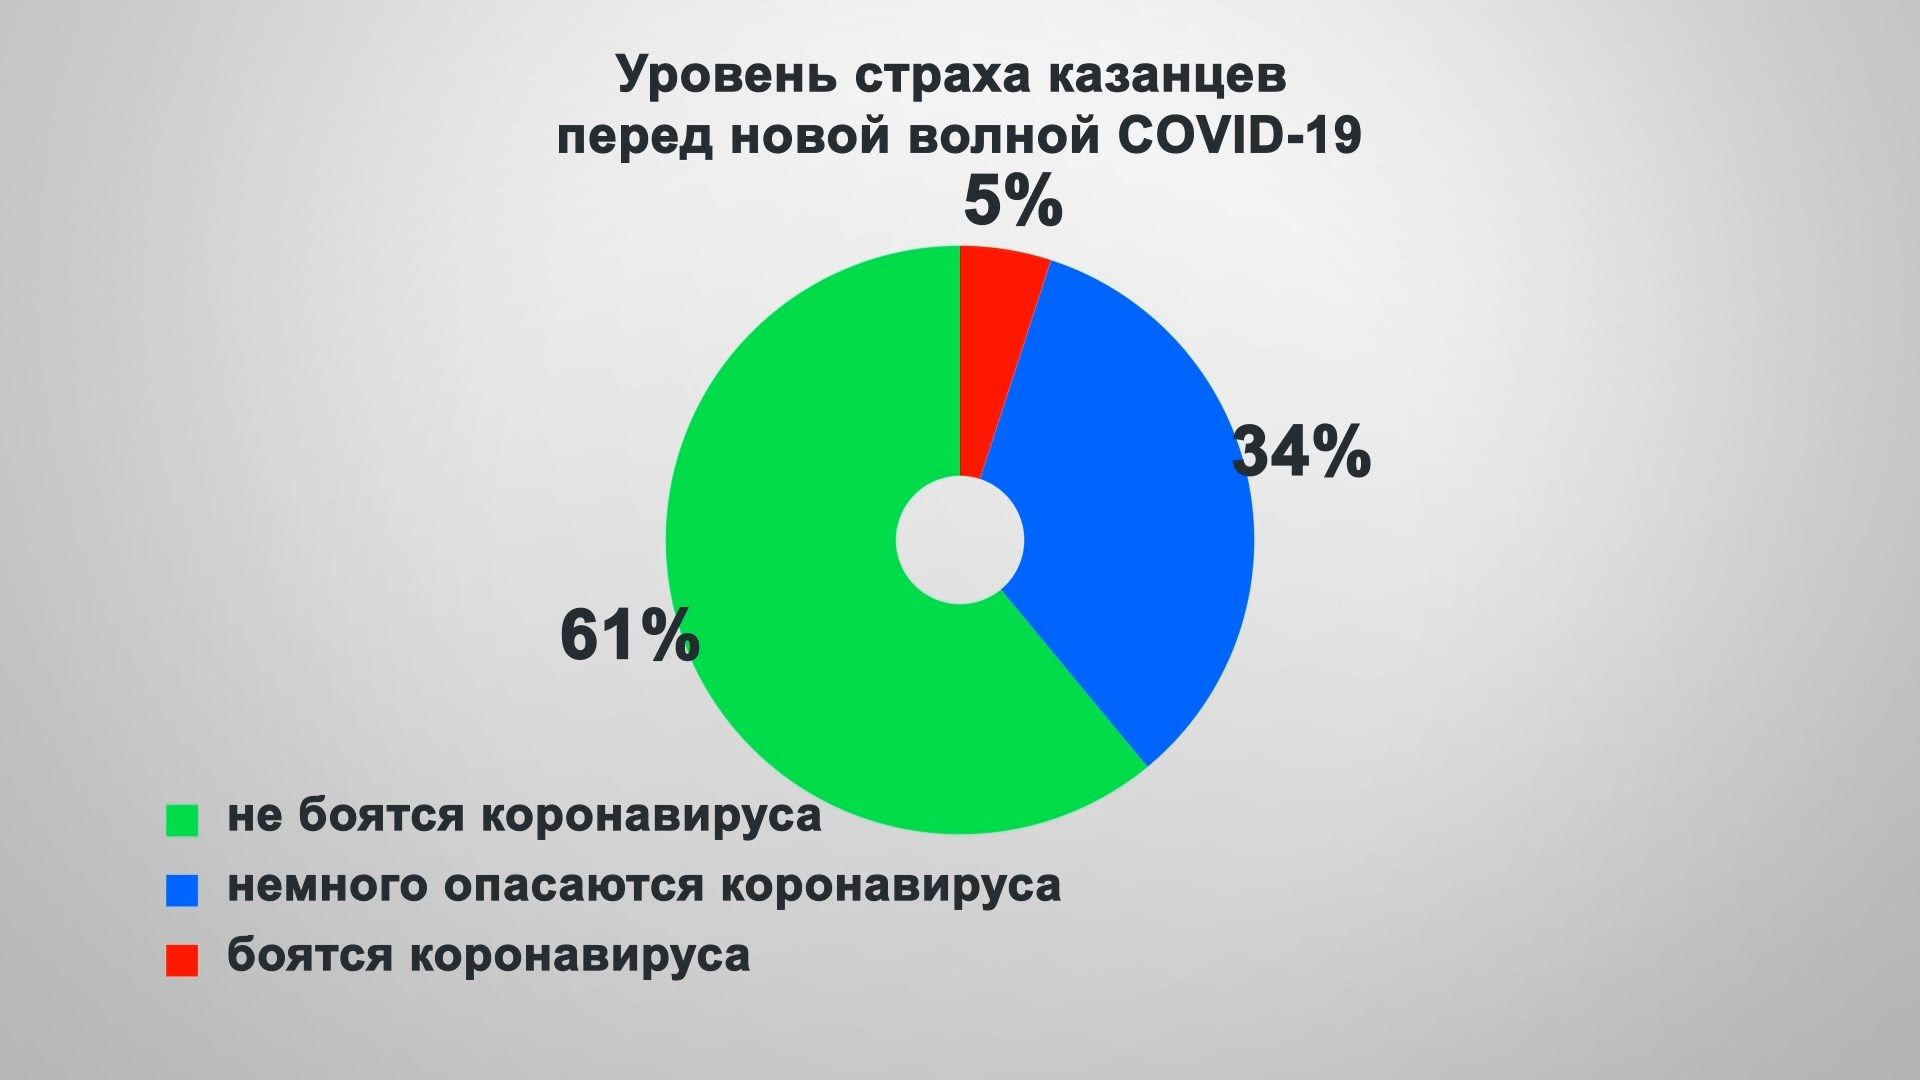 Большинство казанцев не боятся коронавируса - опрос